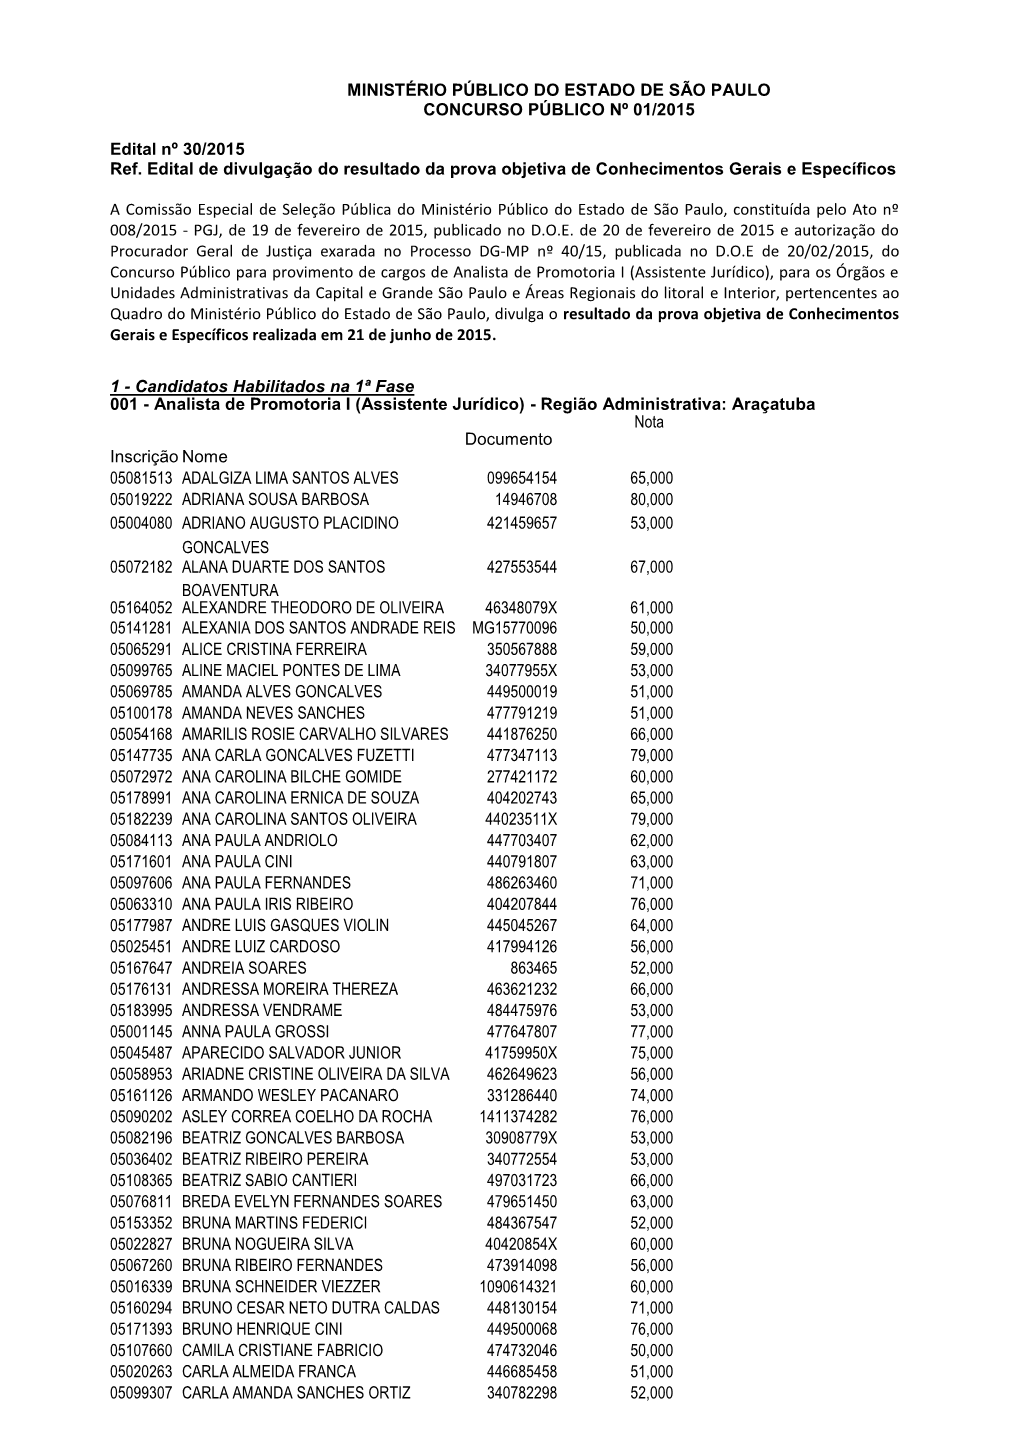 MINISTÉRIO PÚBLICO DO ESTADO DE SÃO PAULO CONCURSO PÚBLICO Nº 01/2015 Edital Nº 30/2015 Ref. Edital De Divulgação Do